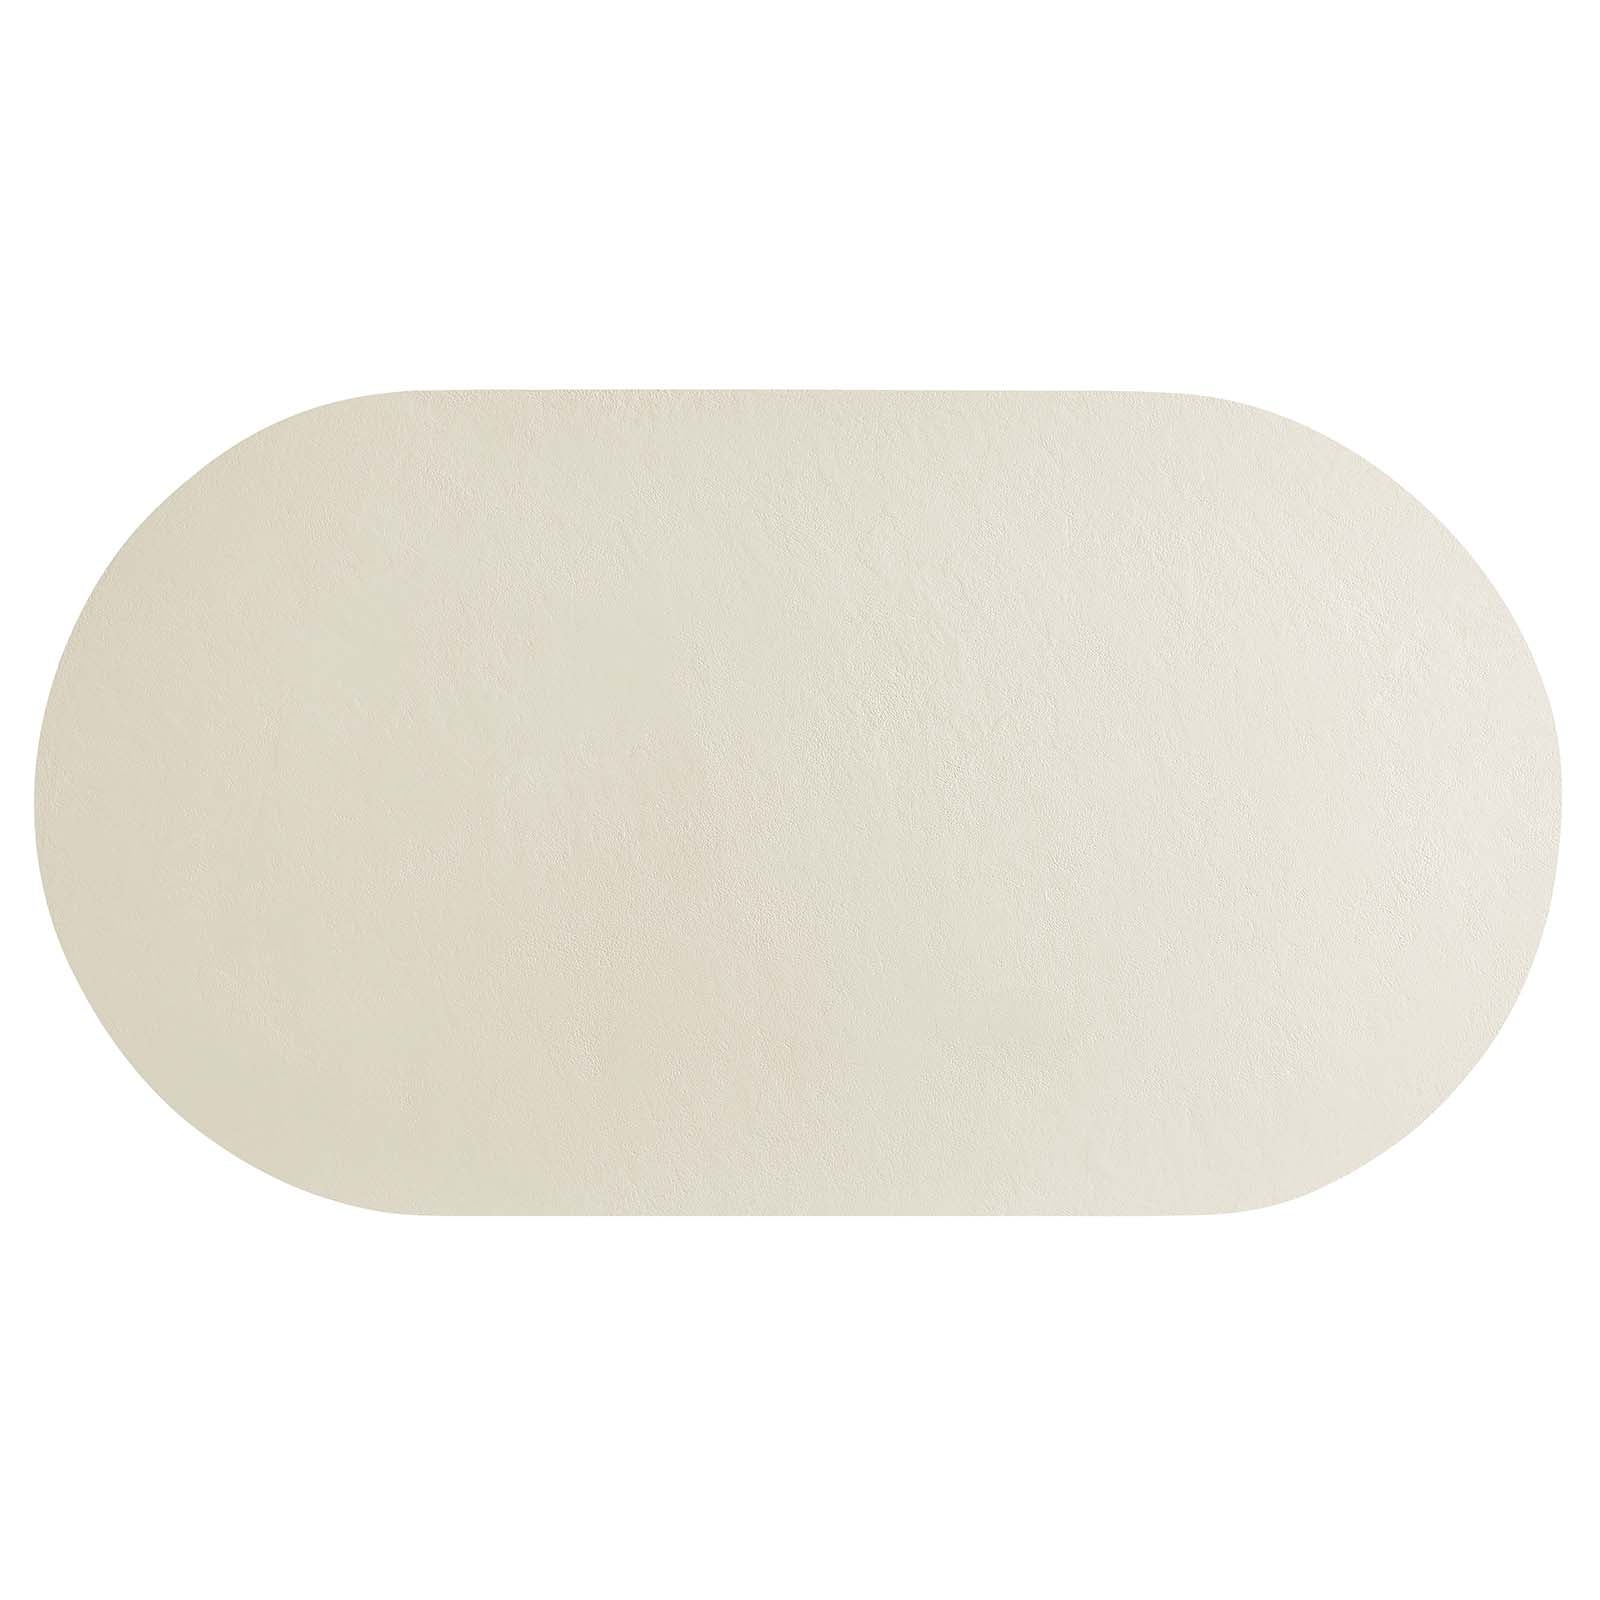 Casper Oval Concrete Coffee Table - White